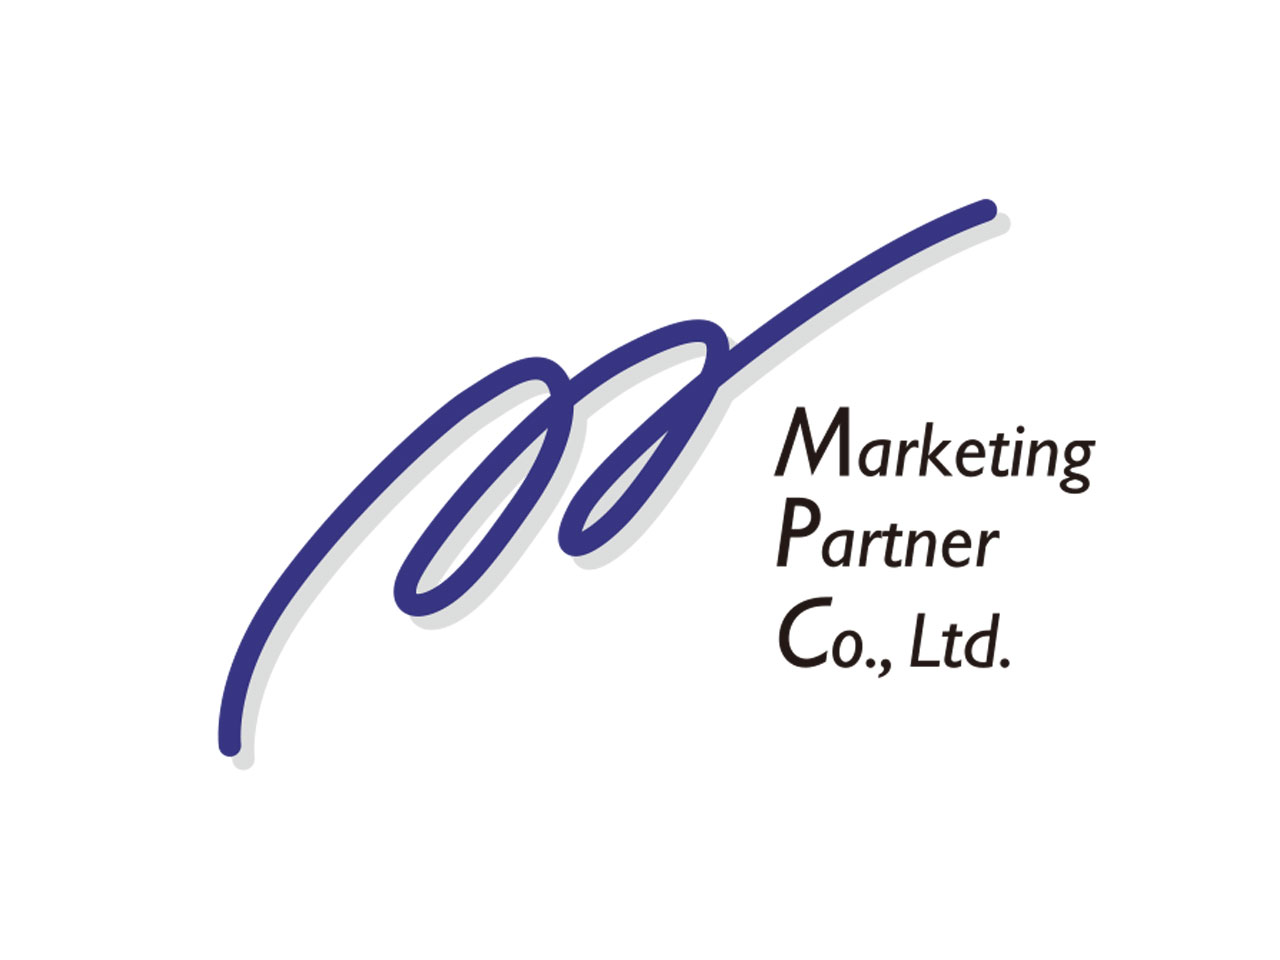 1998年3月に設立された同社は、Eコマース（EC）に特化したマーケティング企業。